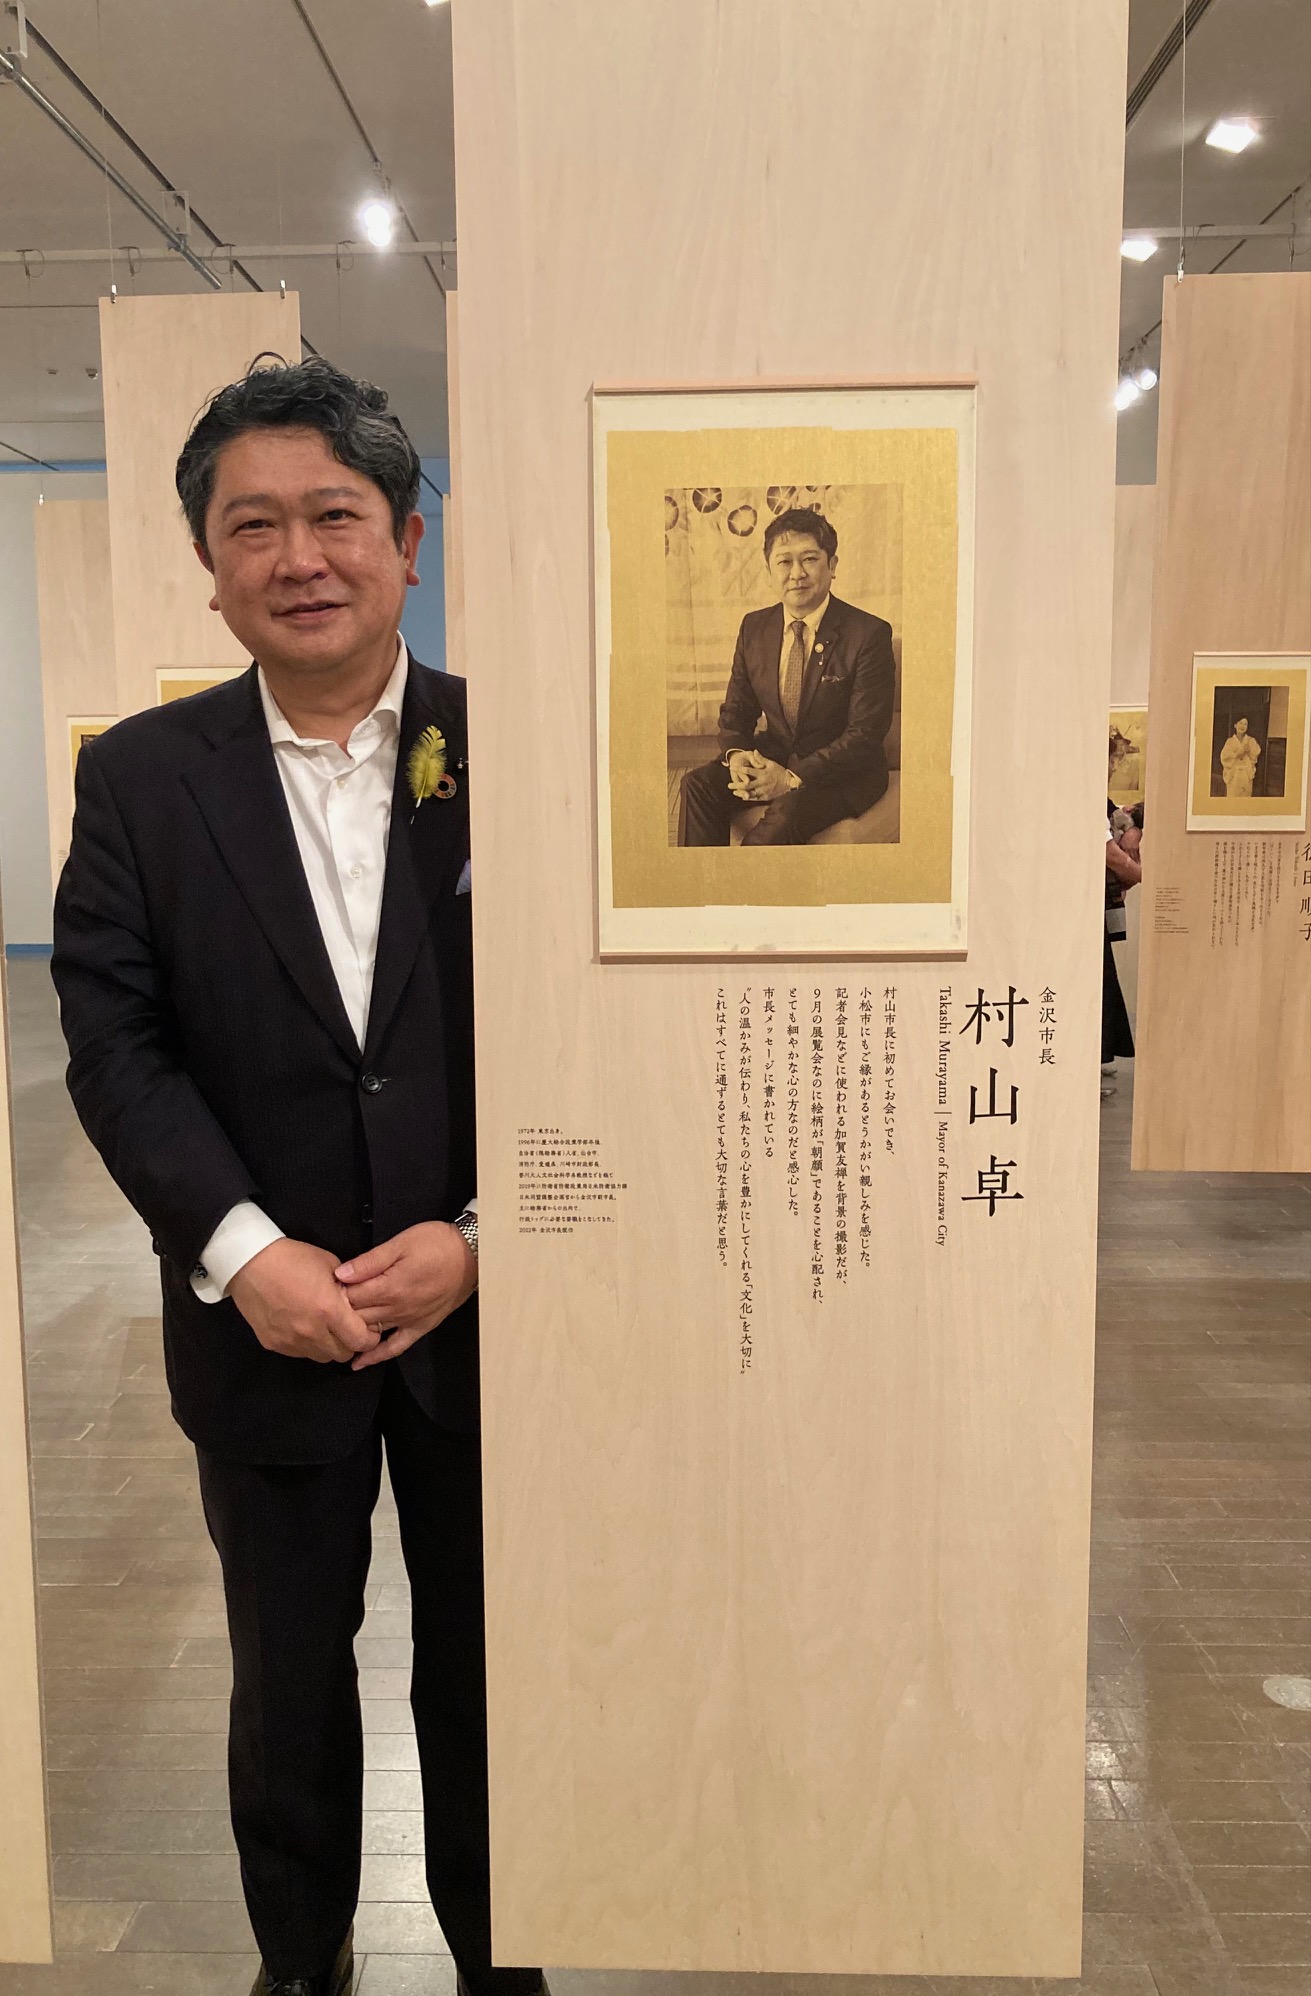 織作峰子さんの写真展「光韻」を鑑賞する市長の様子